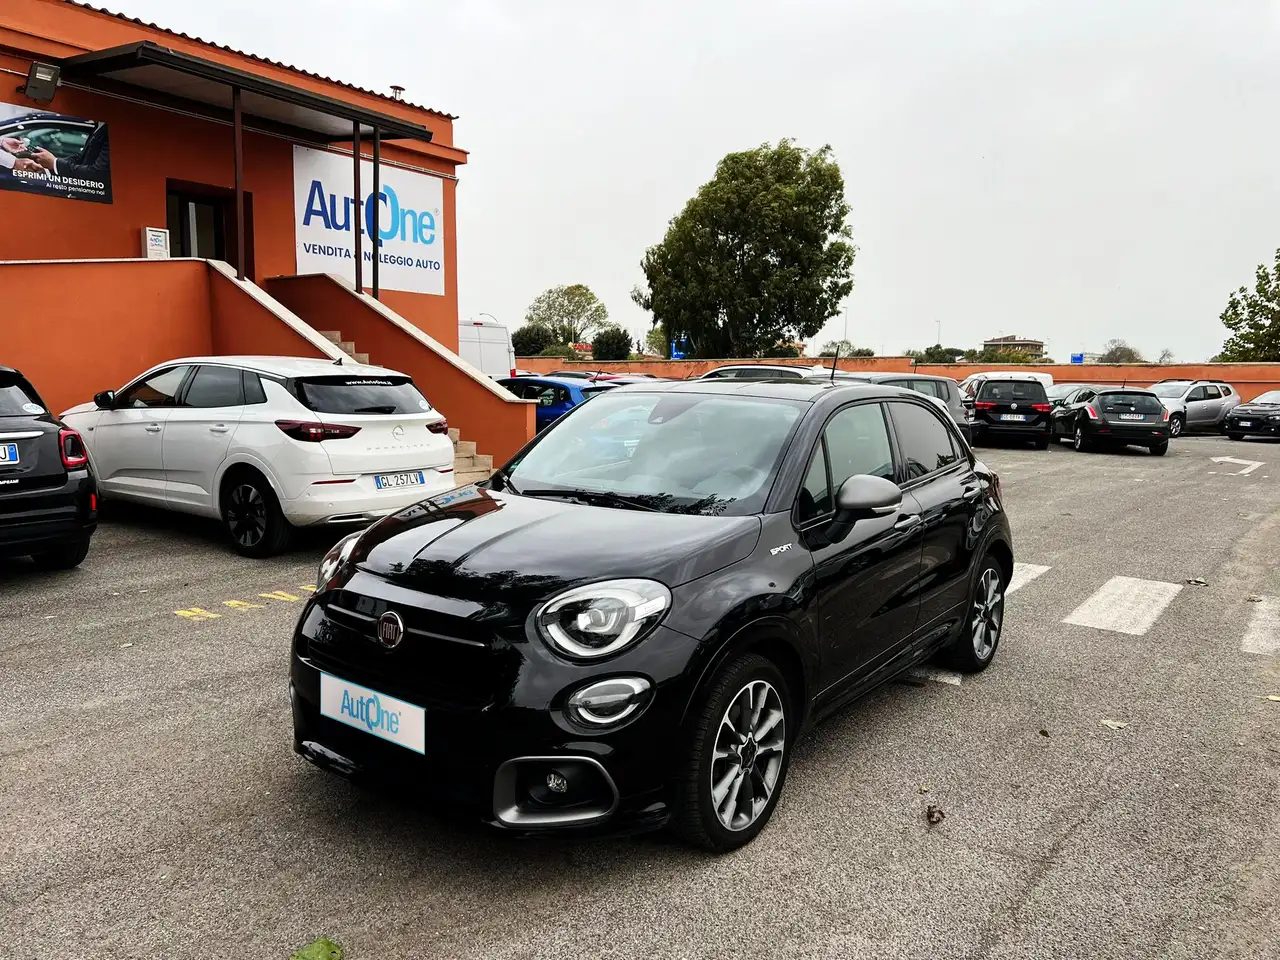 Fiat 500X SUV/4x4/Pick-up in Zwart demo in Ciampino voor € 16.900,-